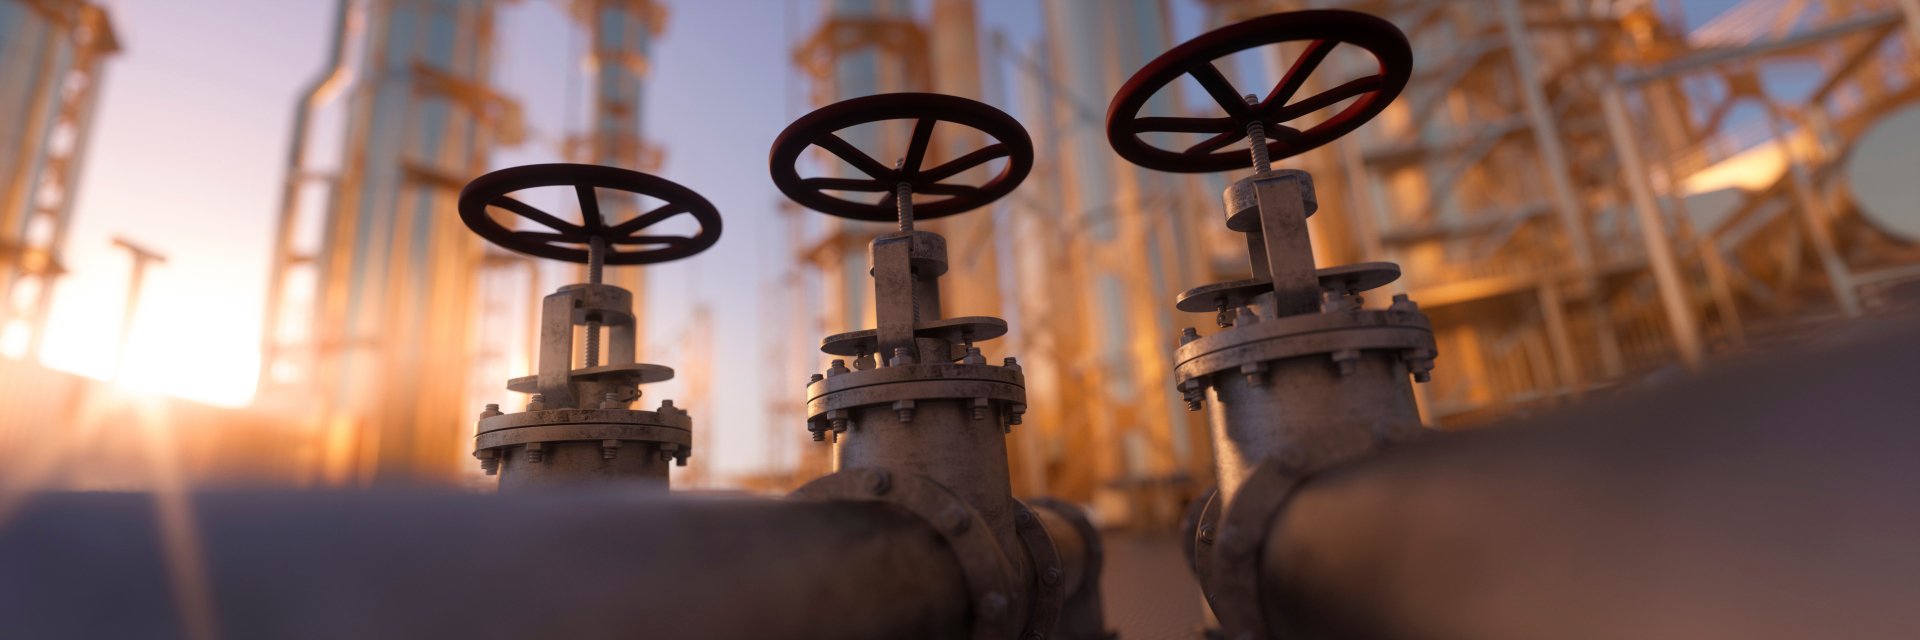 Vláda dále zvyšuje energetickou bezpečnost ČR a její nezávislost na ruské ropě – projekt intenzifikace ropovodu TAL byl schválen